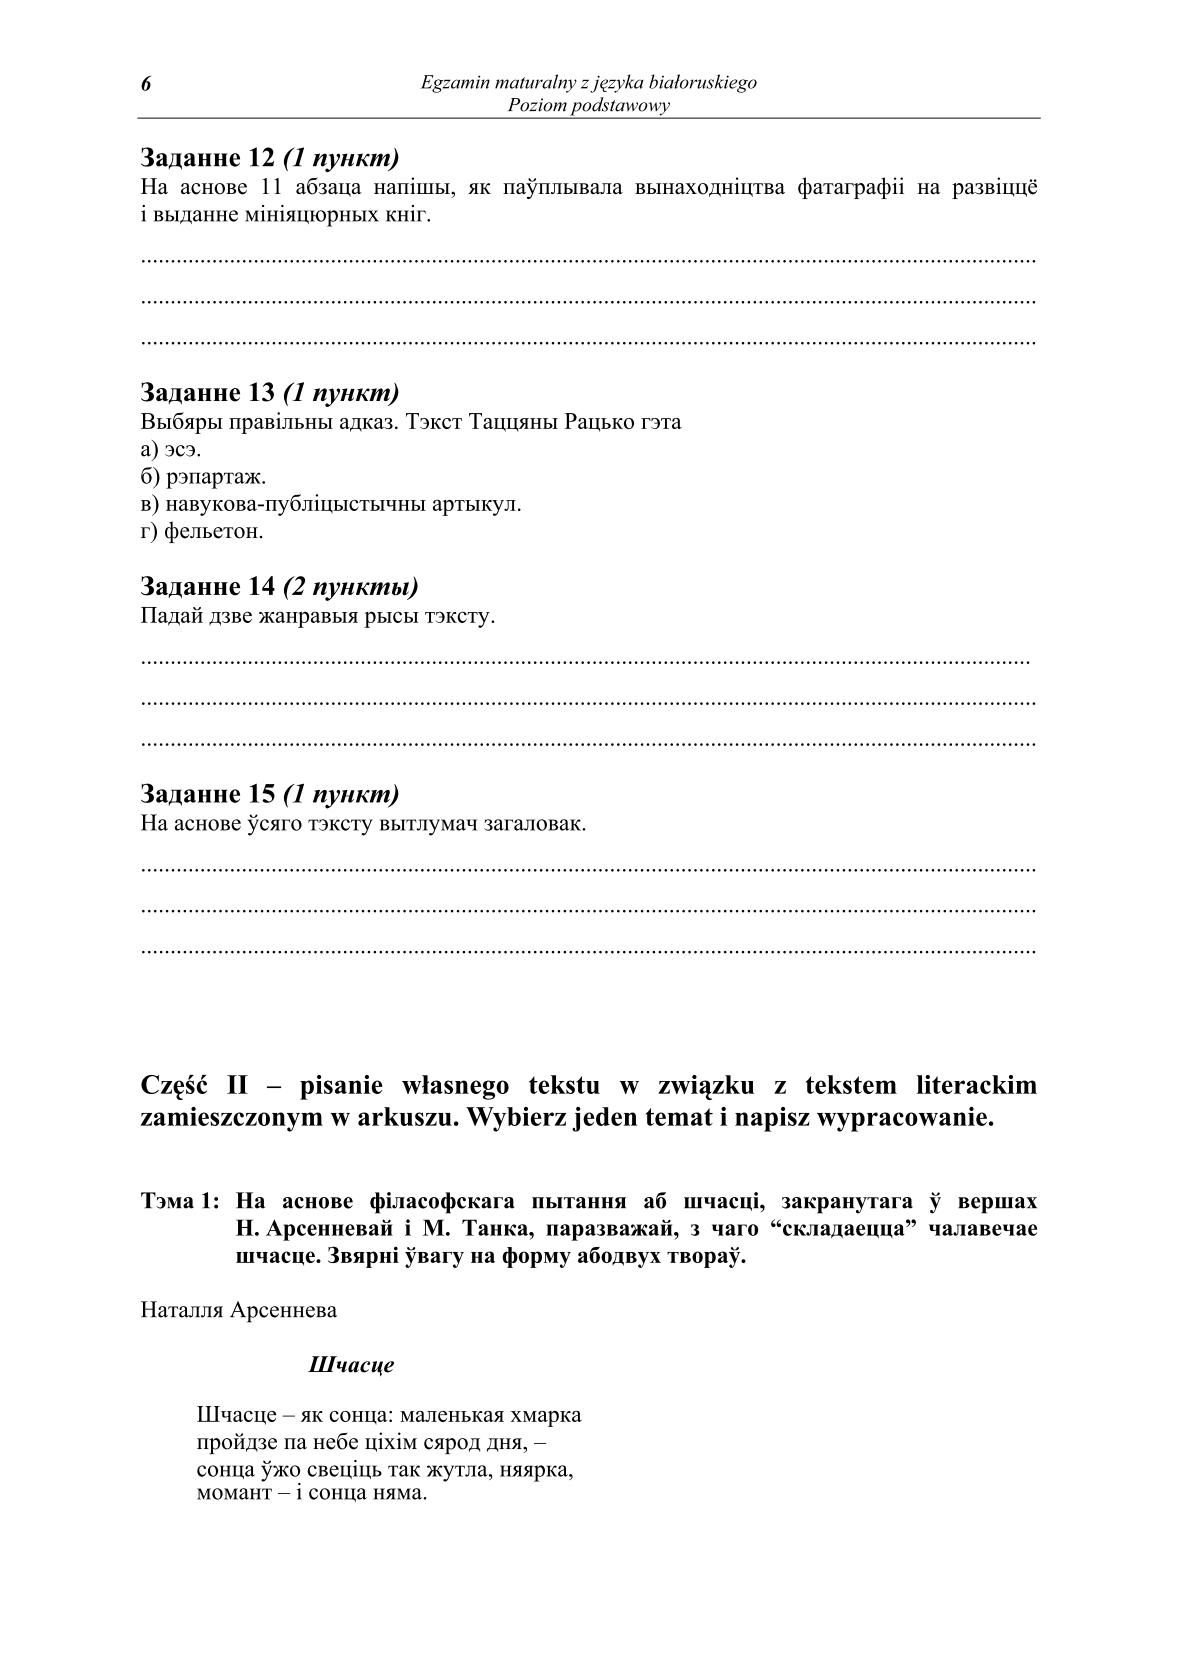 pytania-jezyk-bialoruski-poziom-podstawowy-matura-2014-str.6